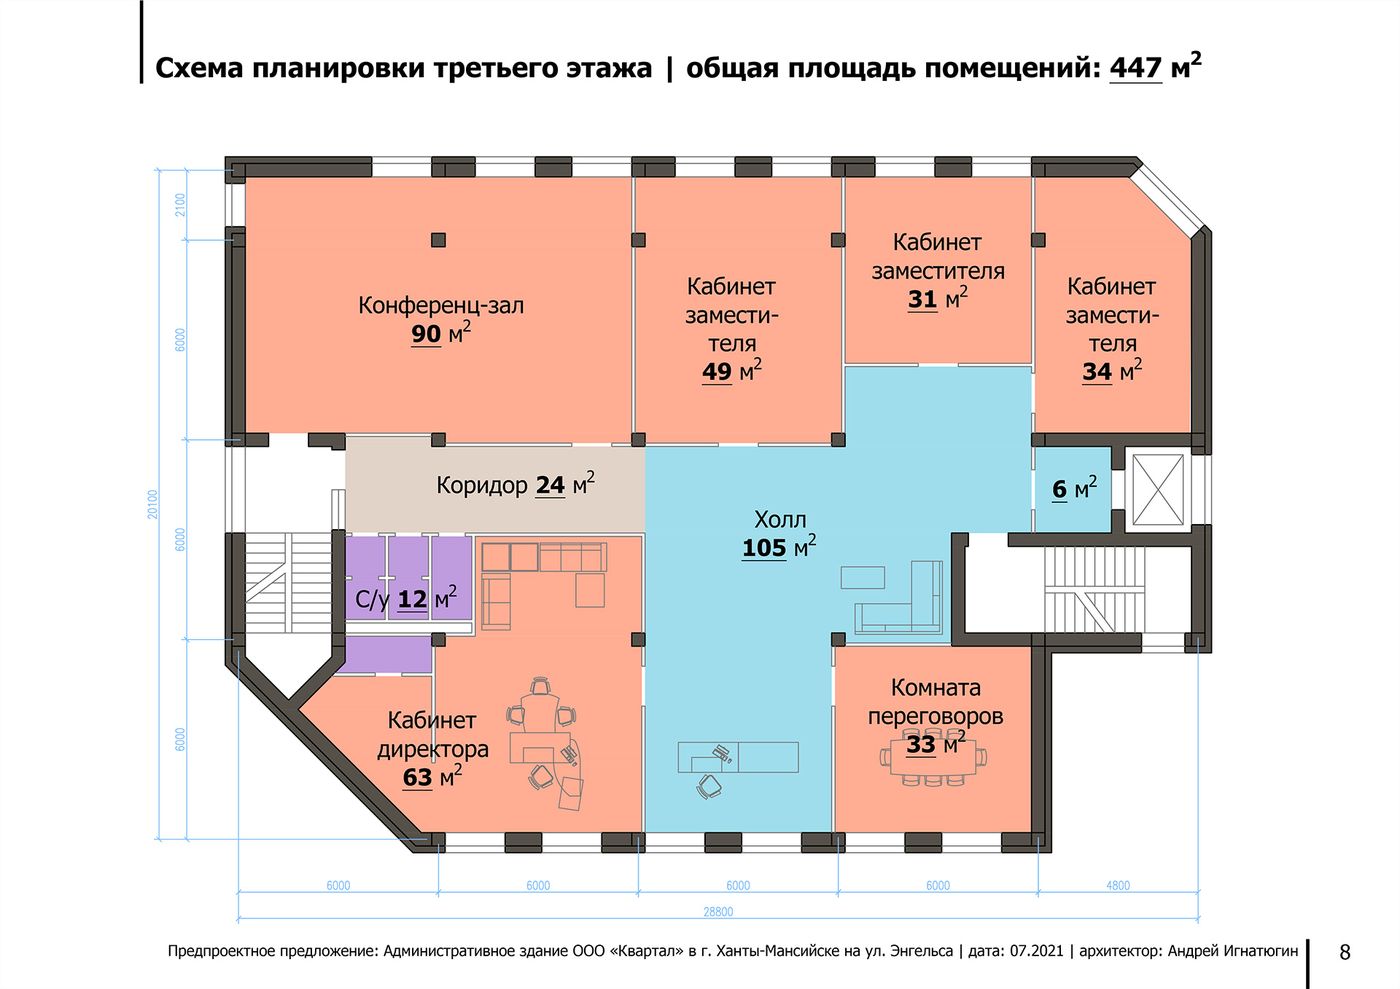 Схема планировки третьего этажа